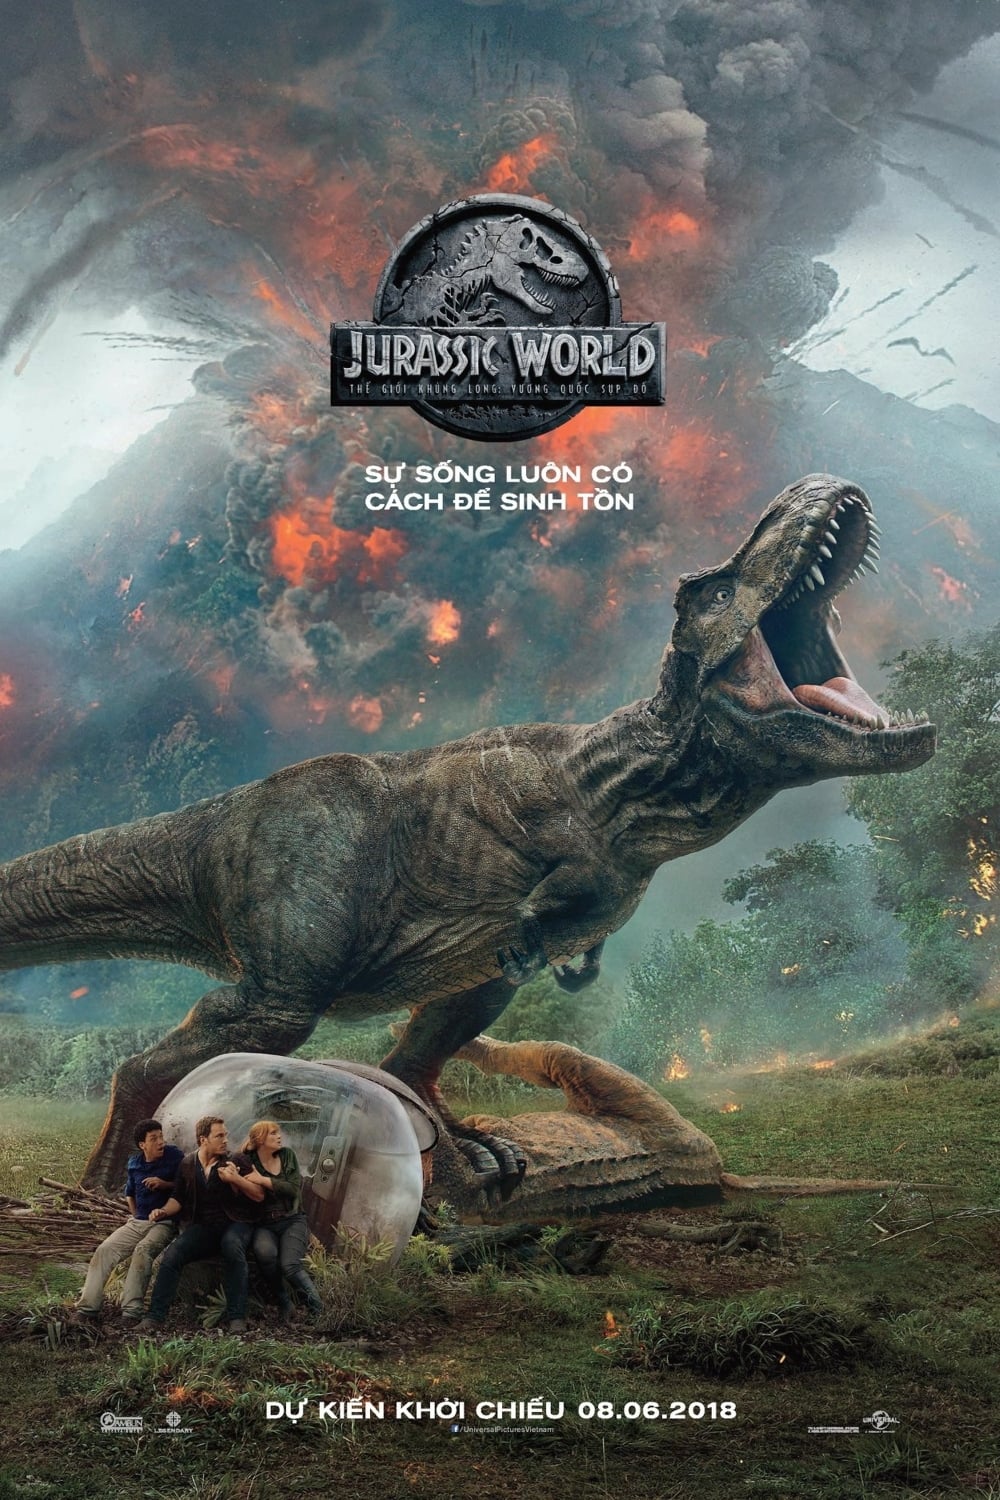 Thế Giới Khủng Long: Vương Quốc Sụp Đổ (Jurassic World: Fallen Kingdom) [2018]